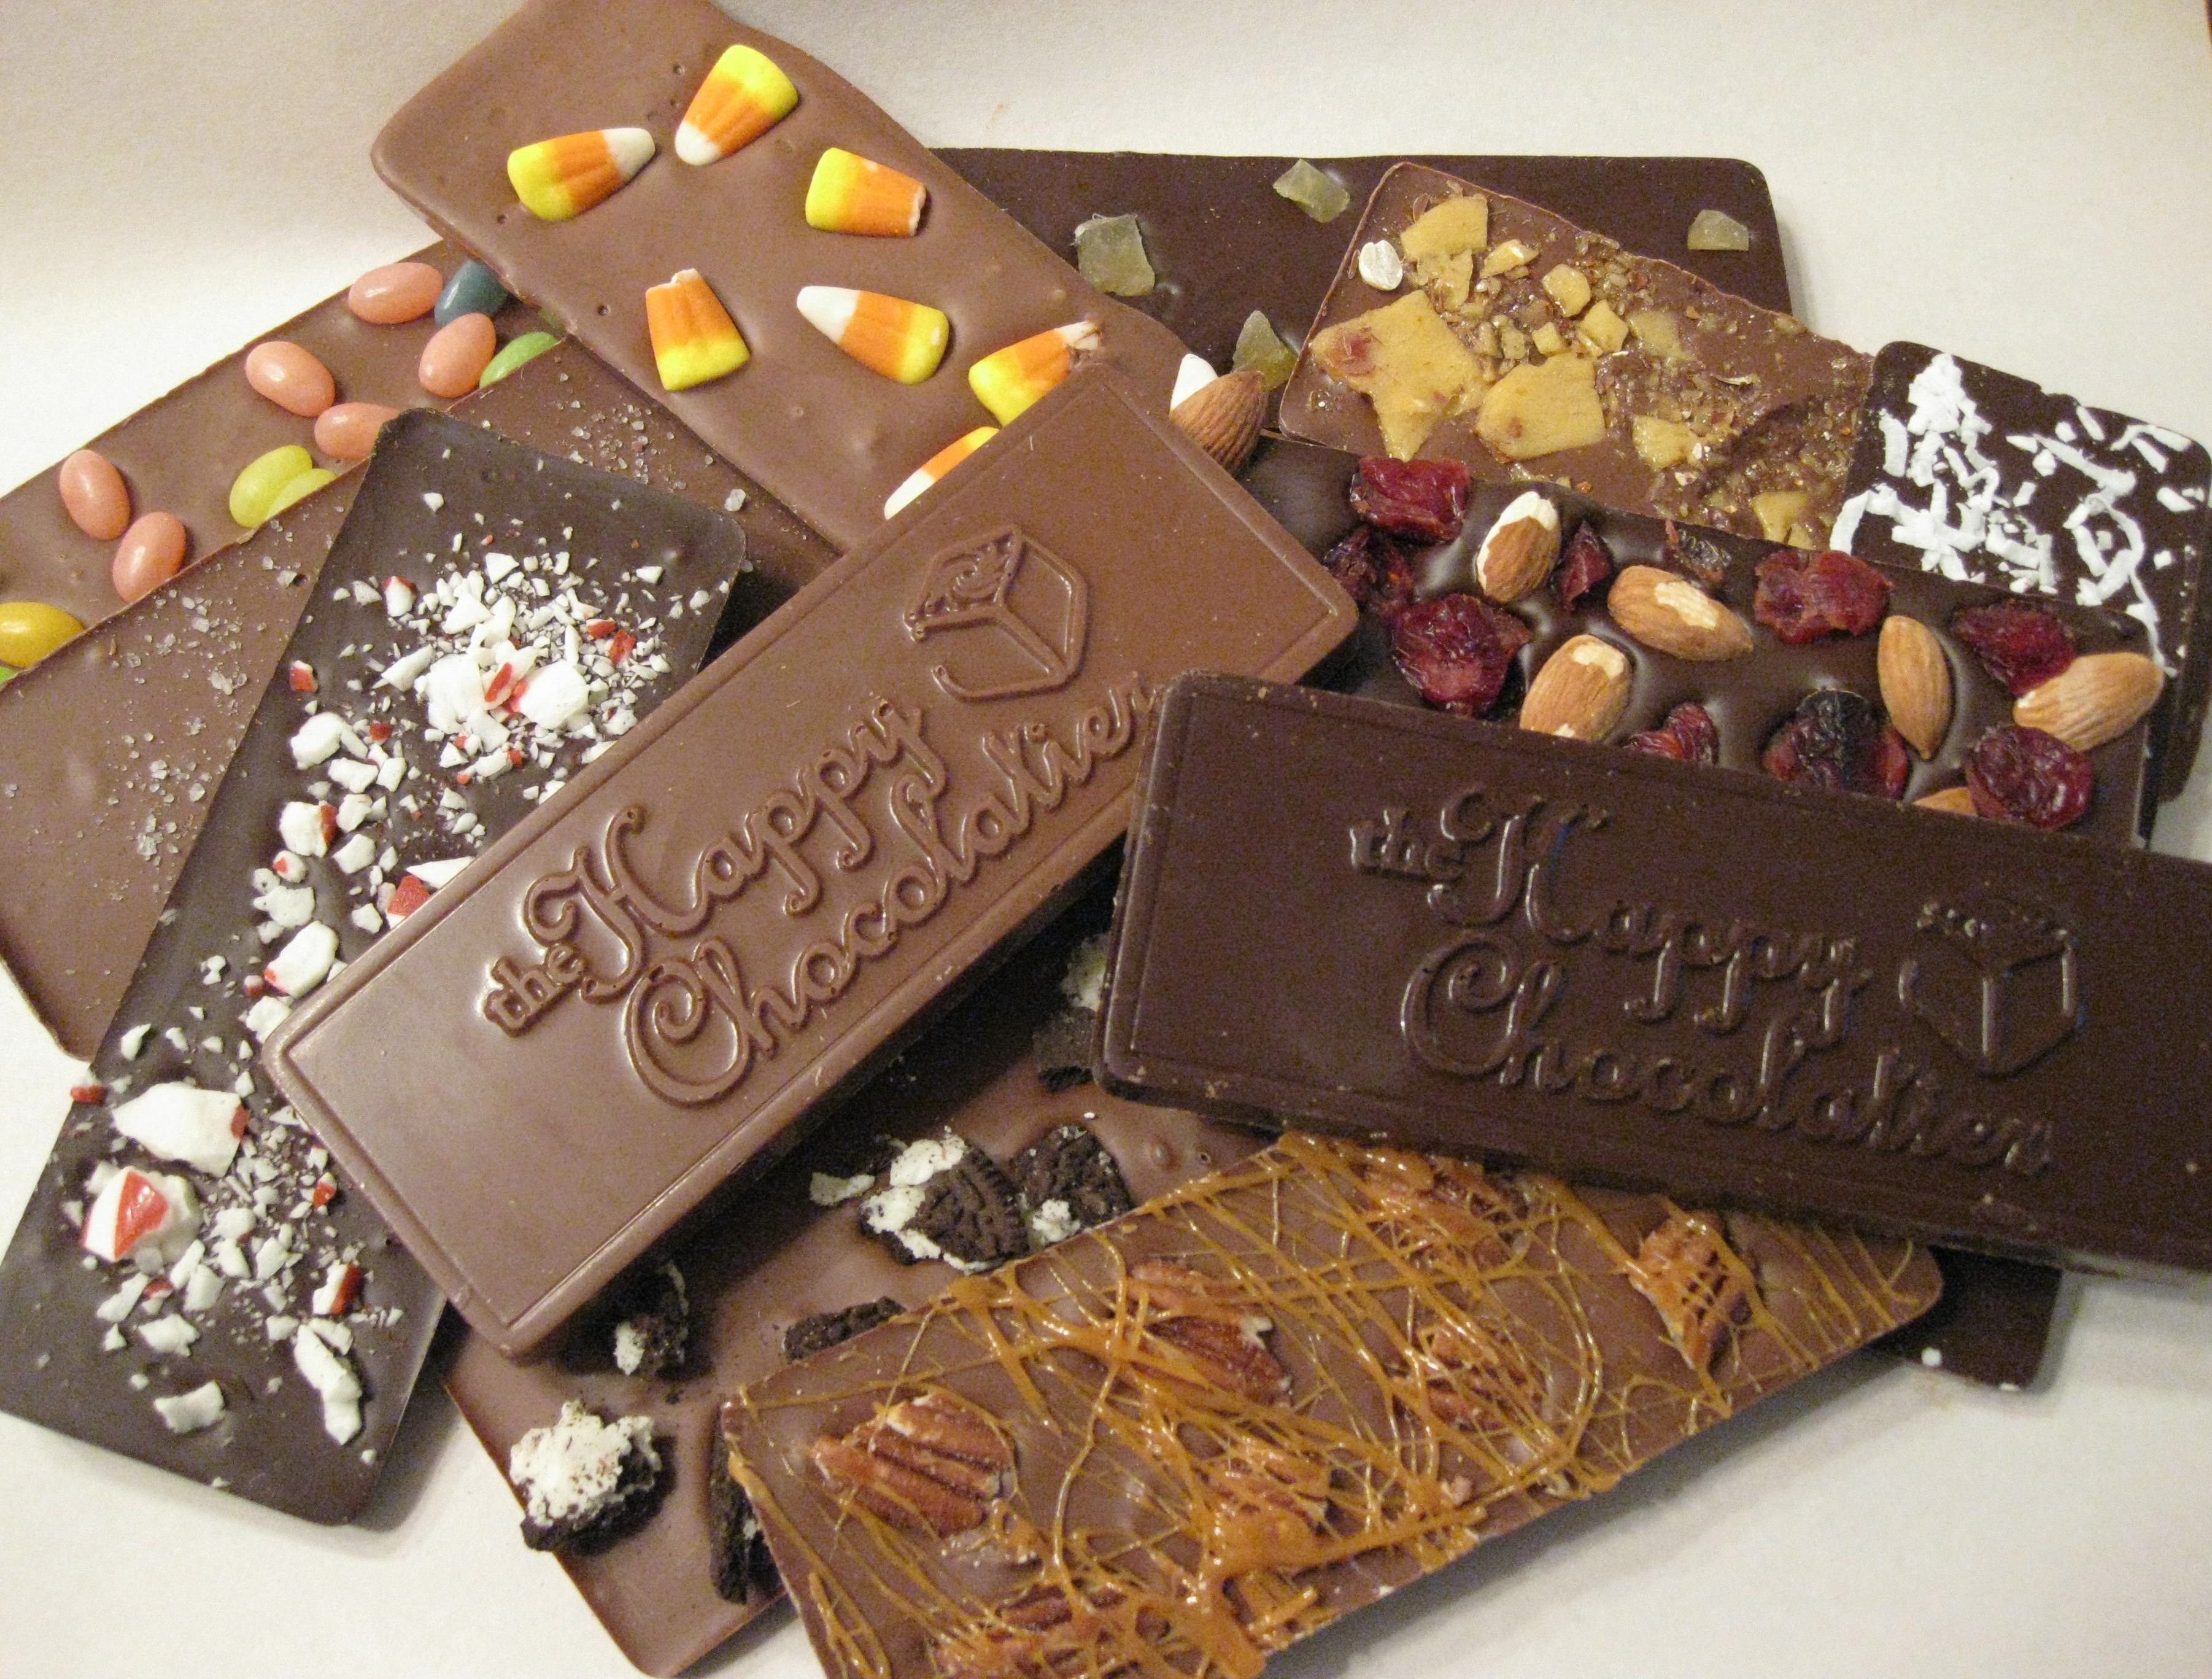 1 5 плитки шоколада. Бельгийский шоколад плитка. Шоколадная плитка Derby. Derby шоколад плитка. Необычный шоколад.